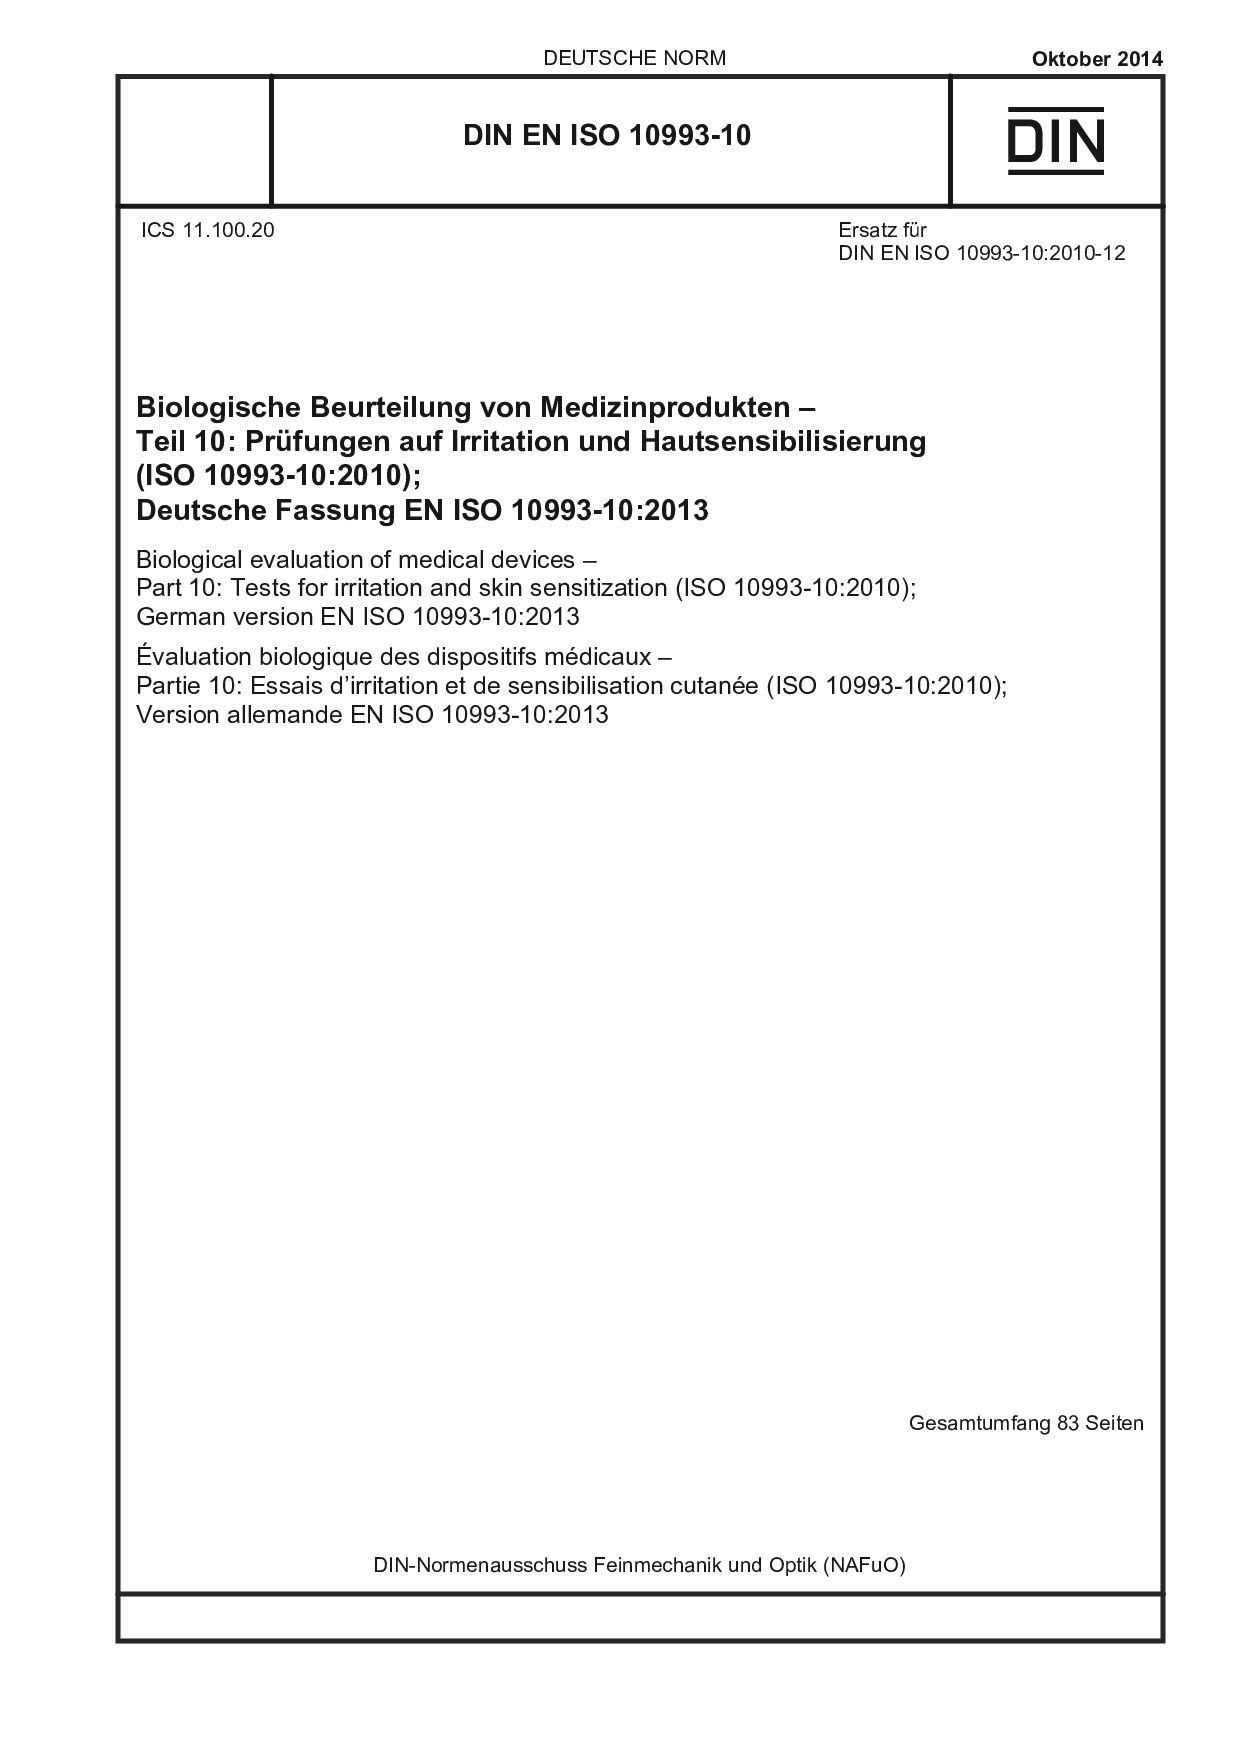 DIN EN ISO 10993-10:2014封面图